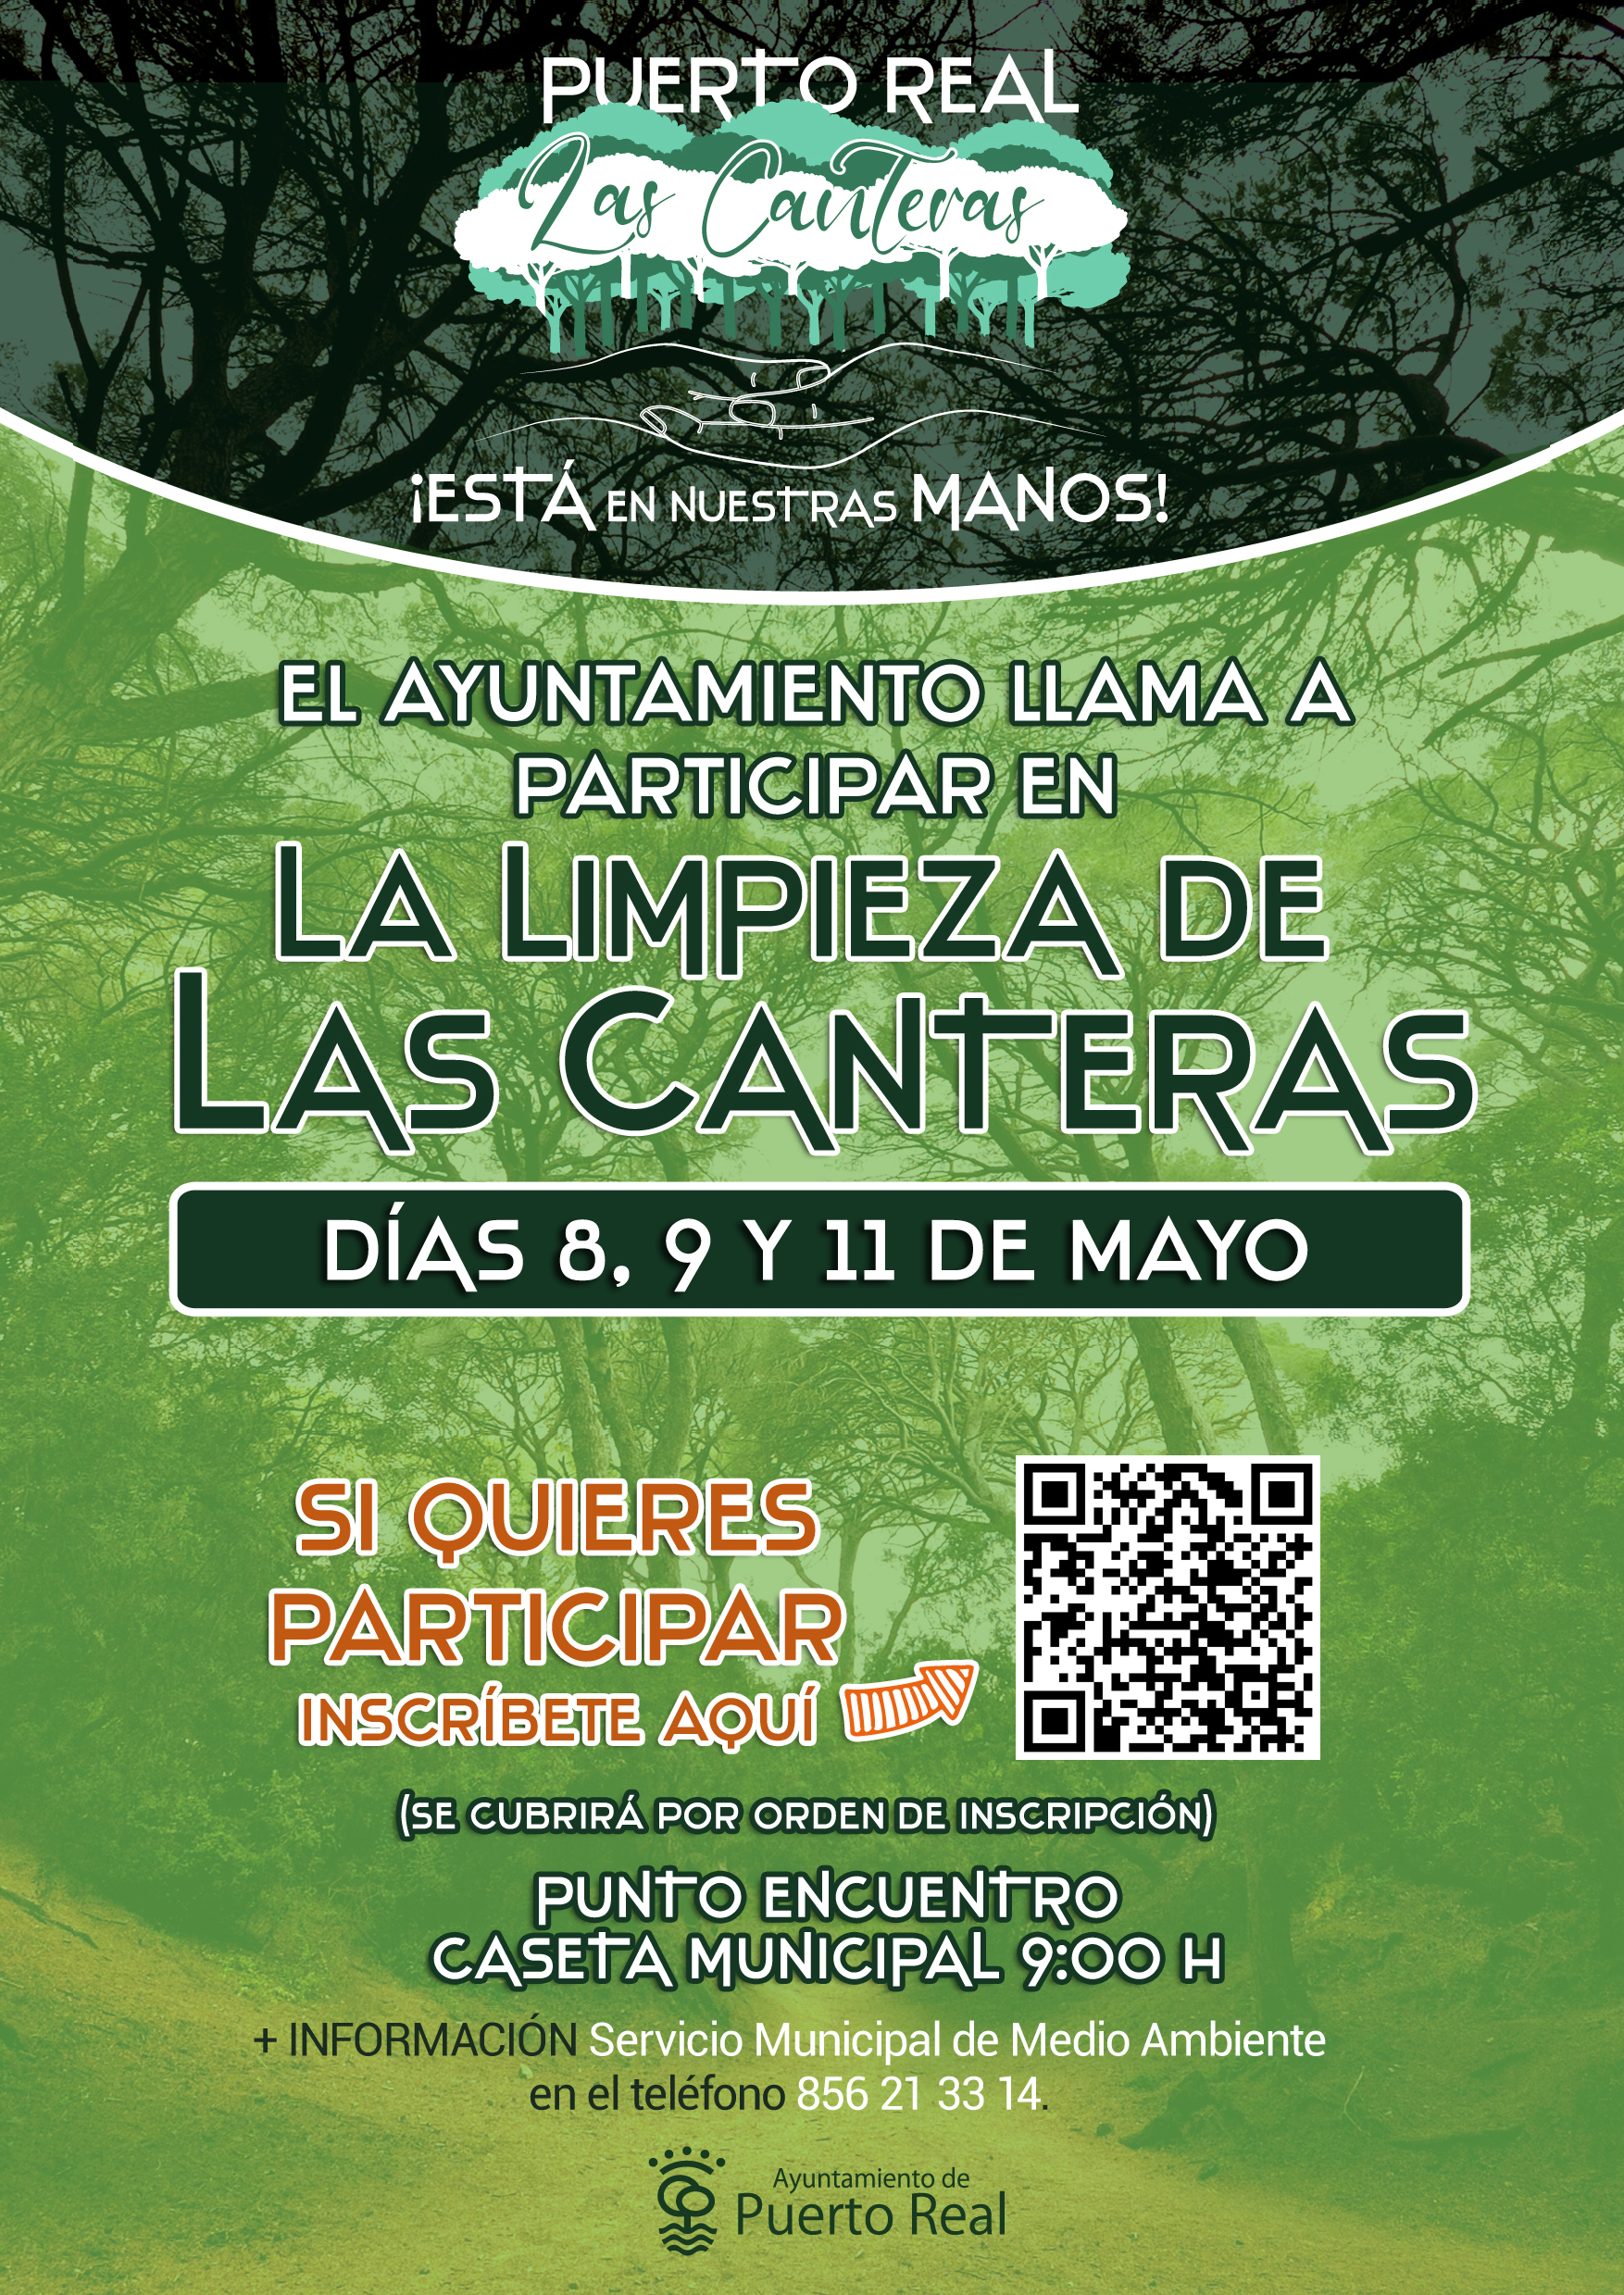 El Ayuntamiento de Puerto Real pide colaboración para limpiar Las Canteras